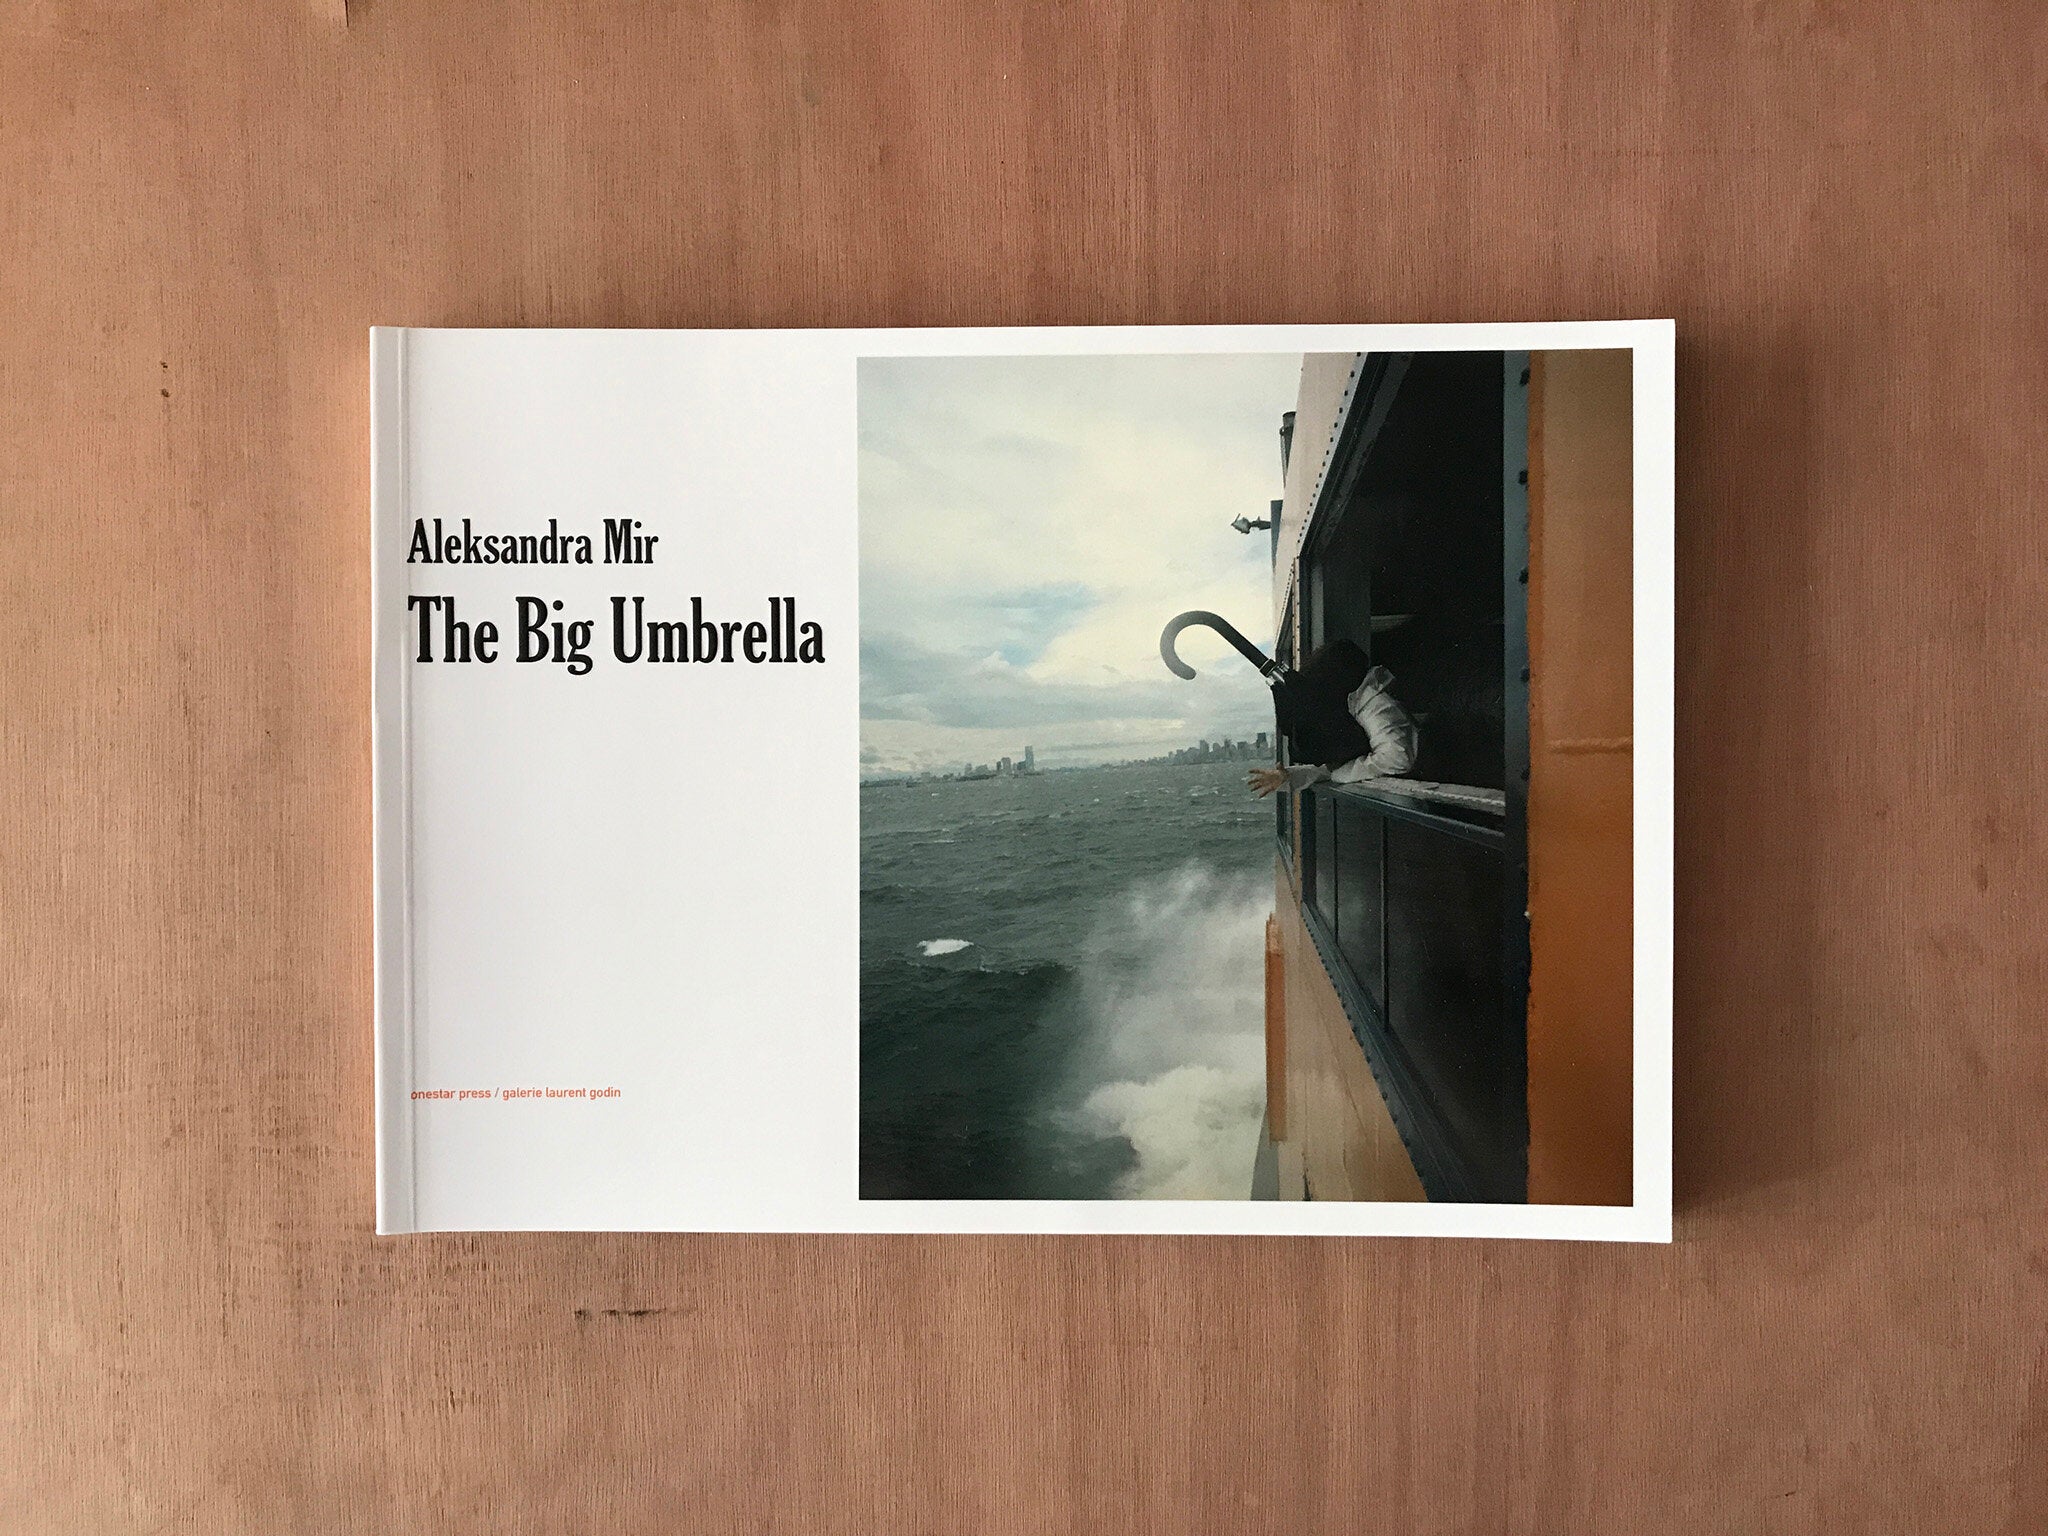 THE BIG UMBRELLA by Aleksandra Mir